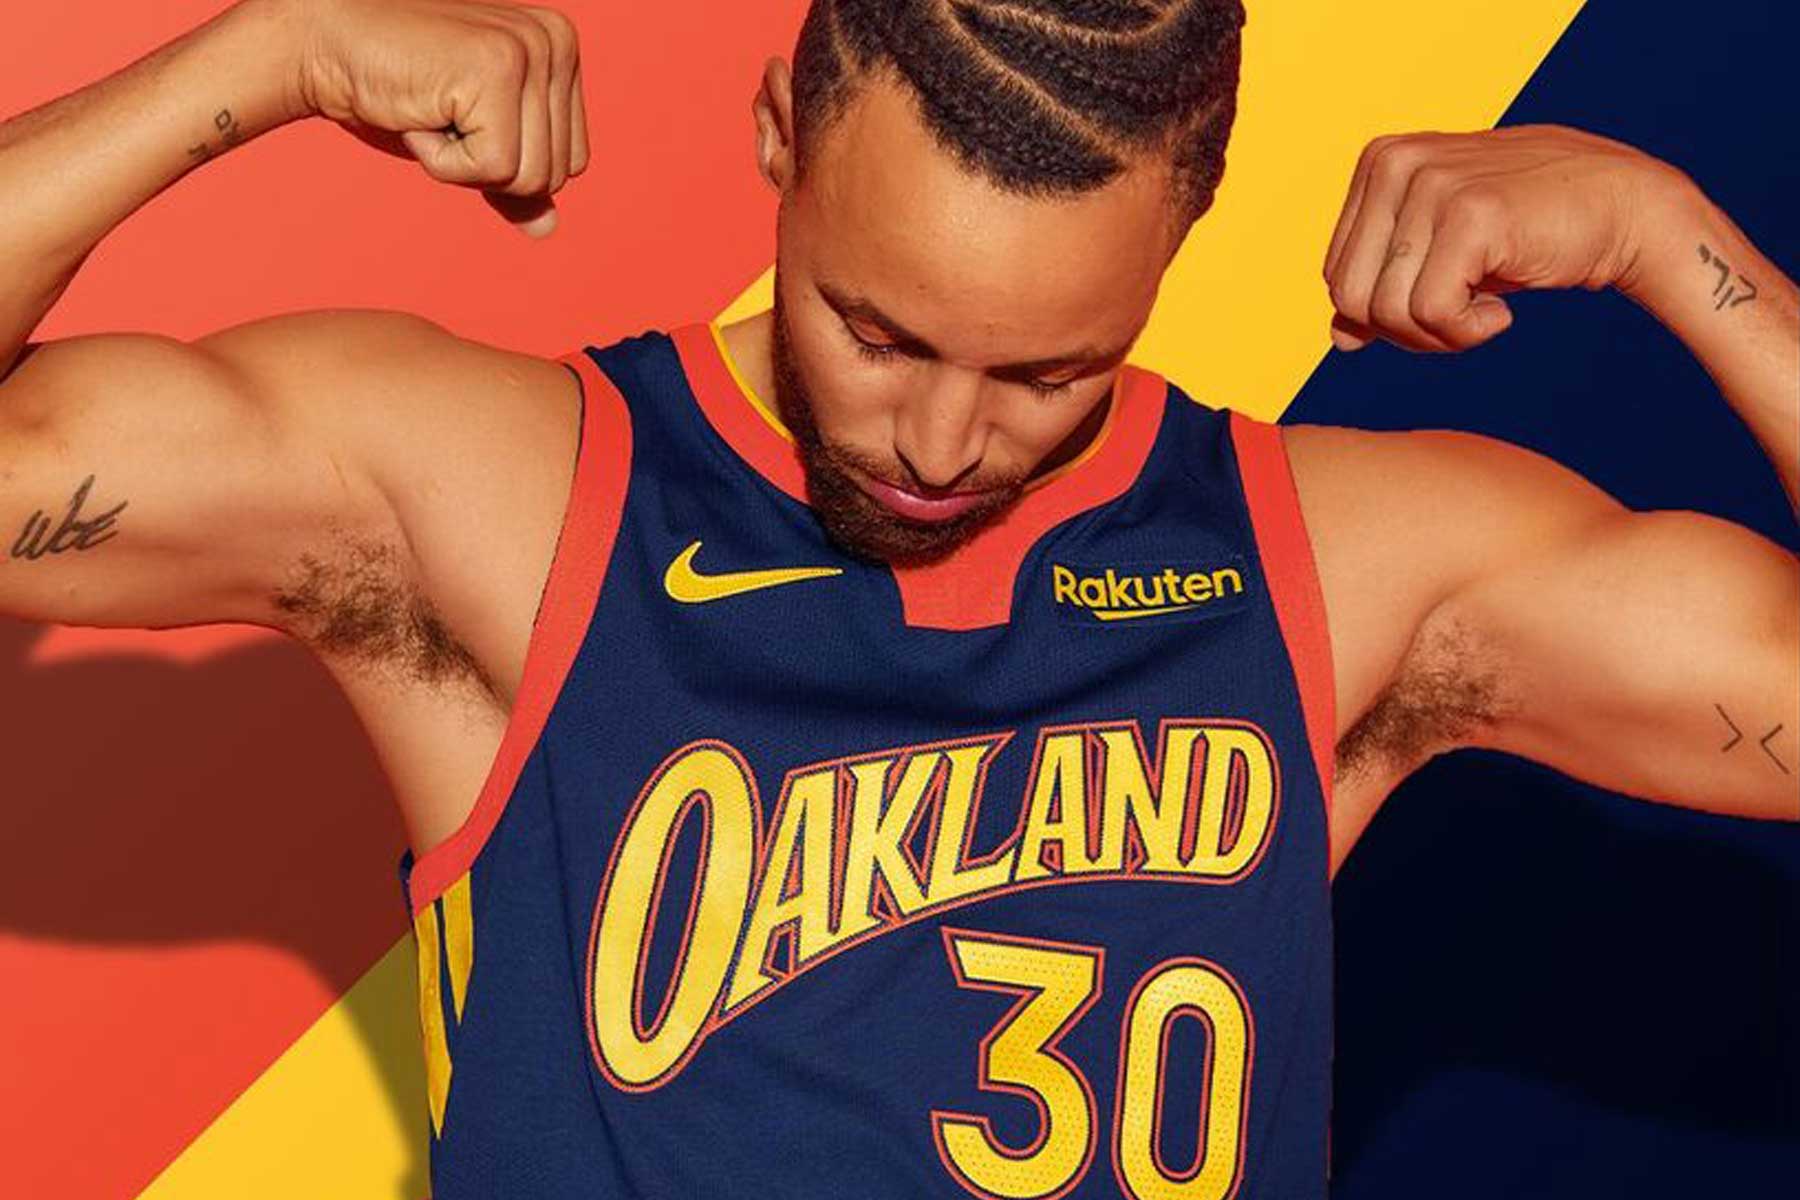 Warriors Oakland Curry jersey